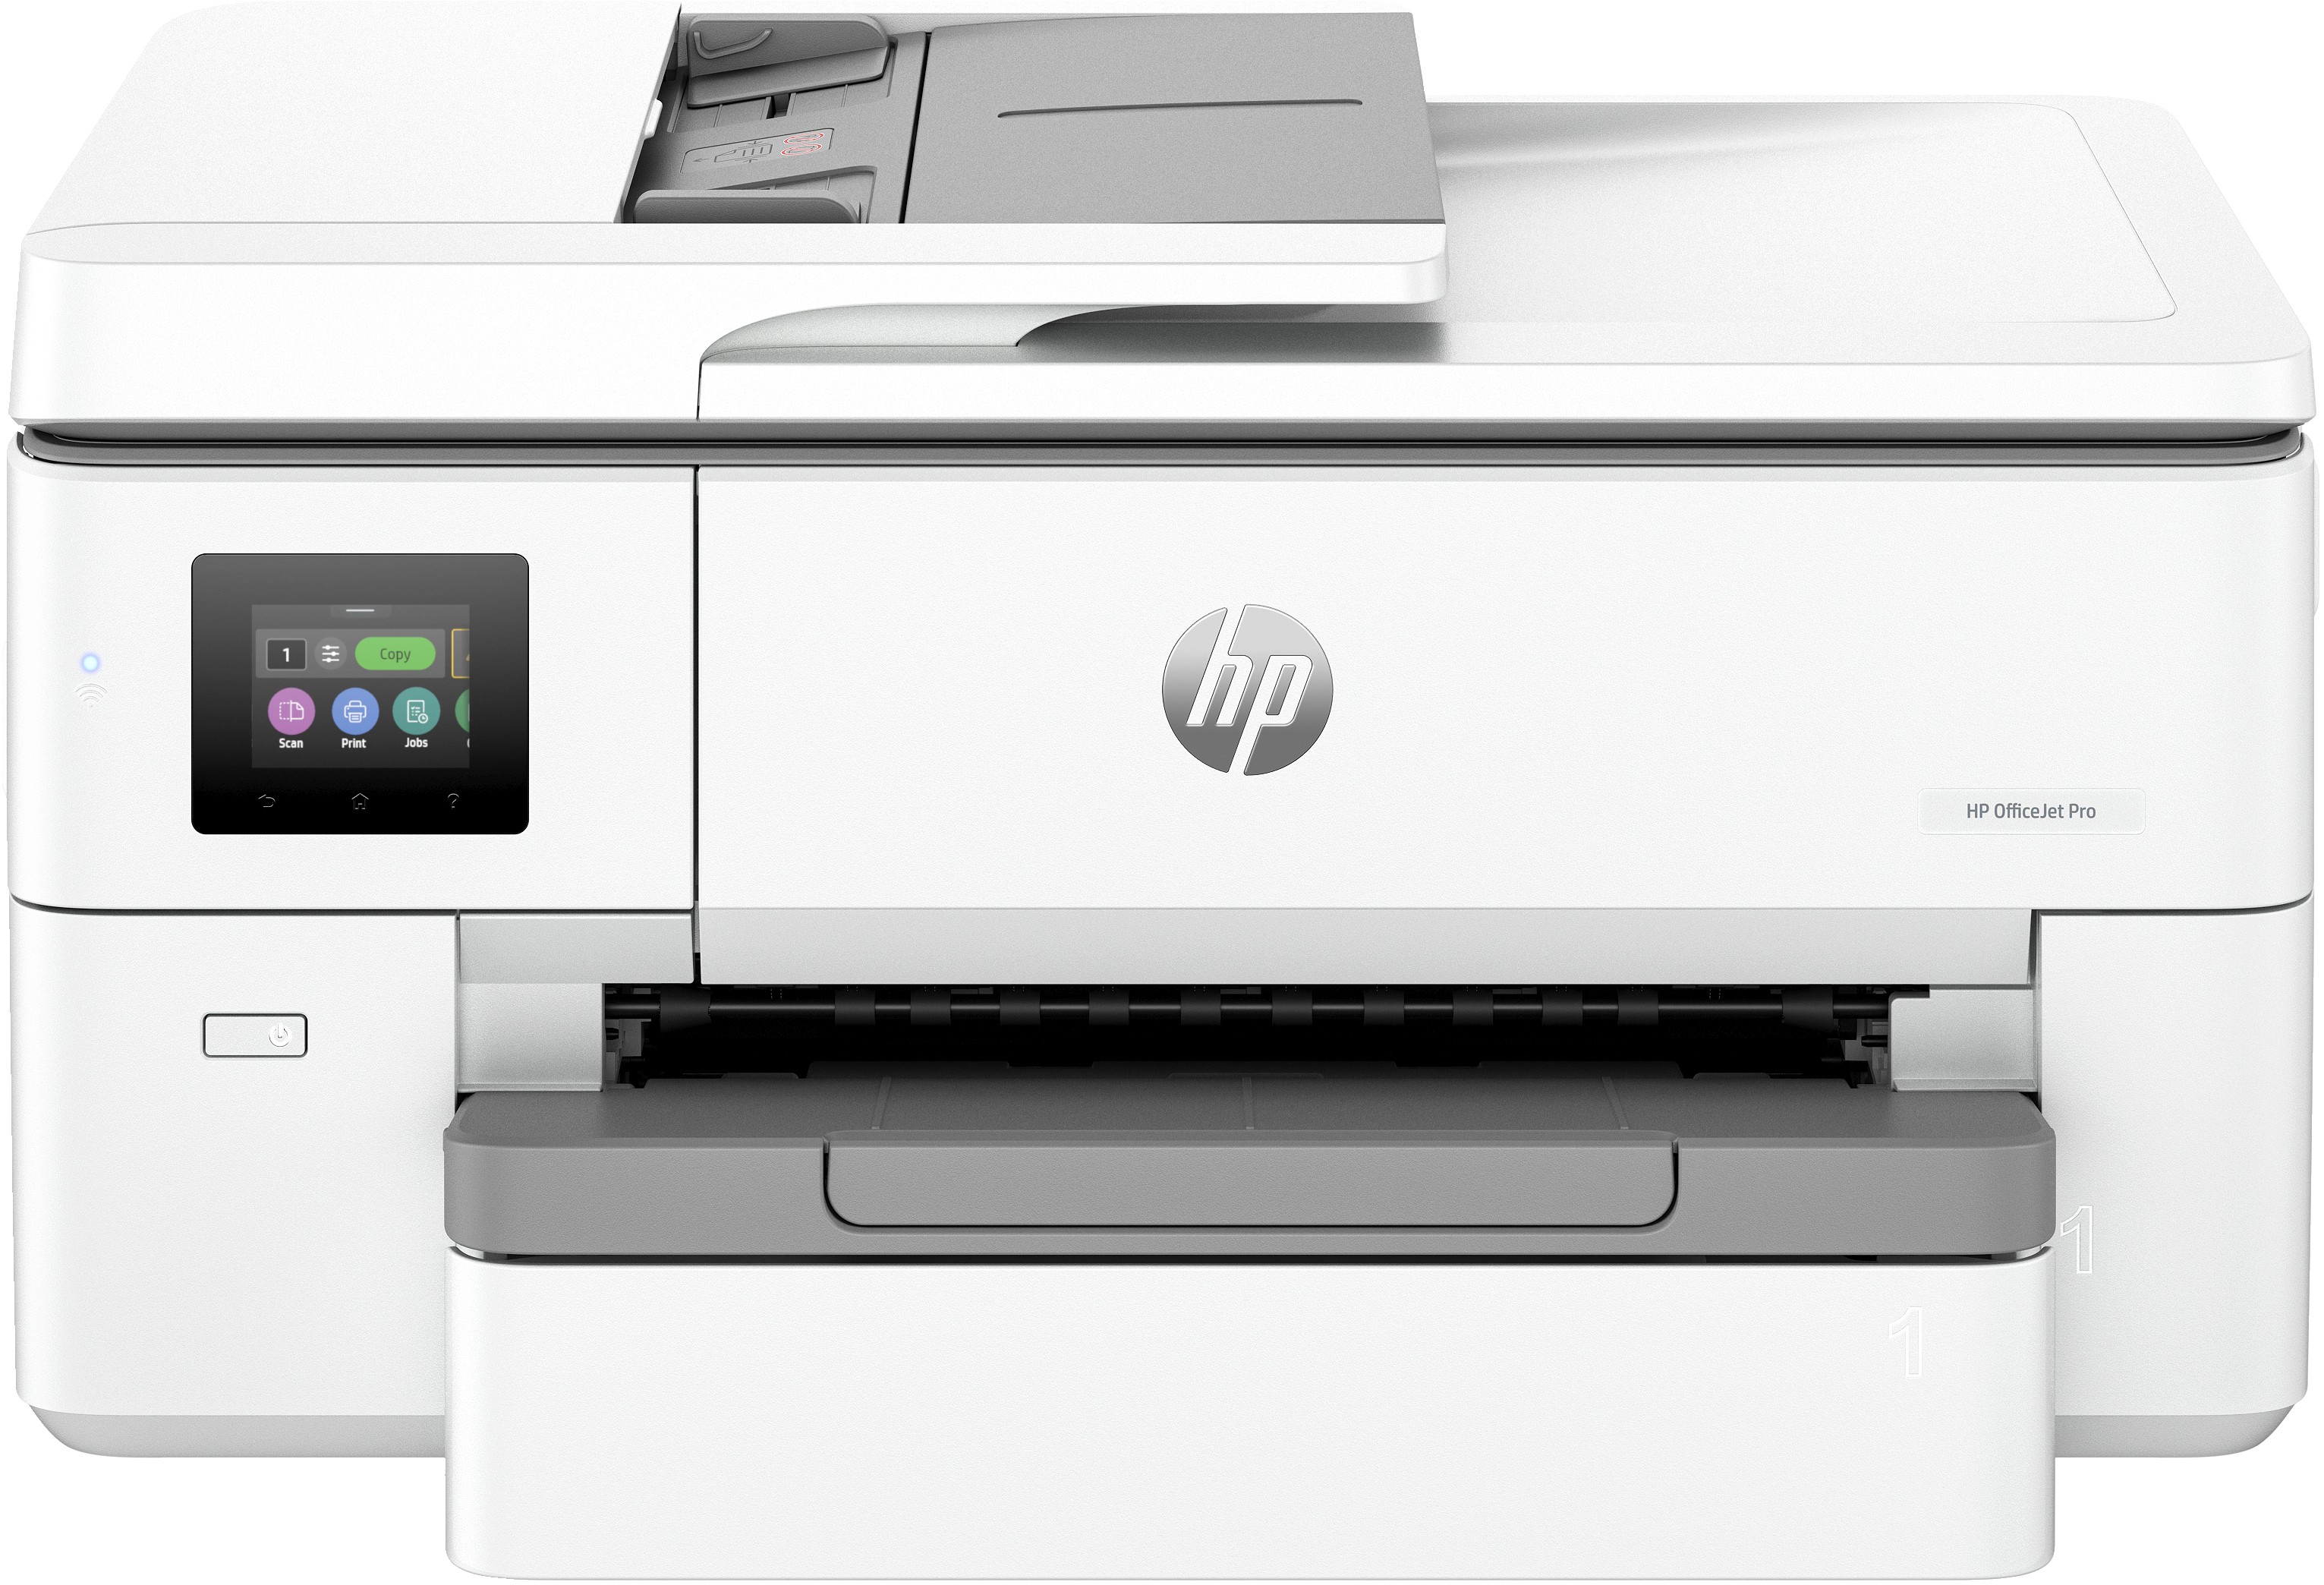 Image of HP OfficeJet Pro Stampante multifunzione per grandi formati HP 9720e, Colore, Stampante per Piccoli uffici, Stampa, copia, scansione, HP+; idonea a HP Instant Ink; wireless; Stampa fronte/retro; alimentatore automatico di documenti; stampa da smartphone o